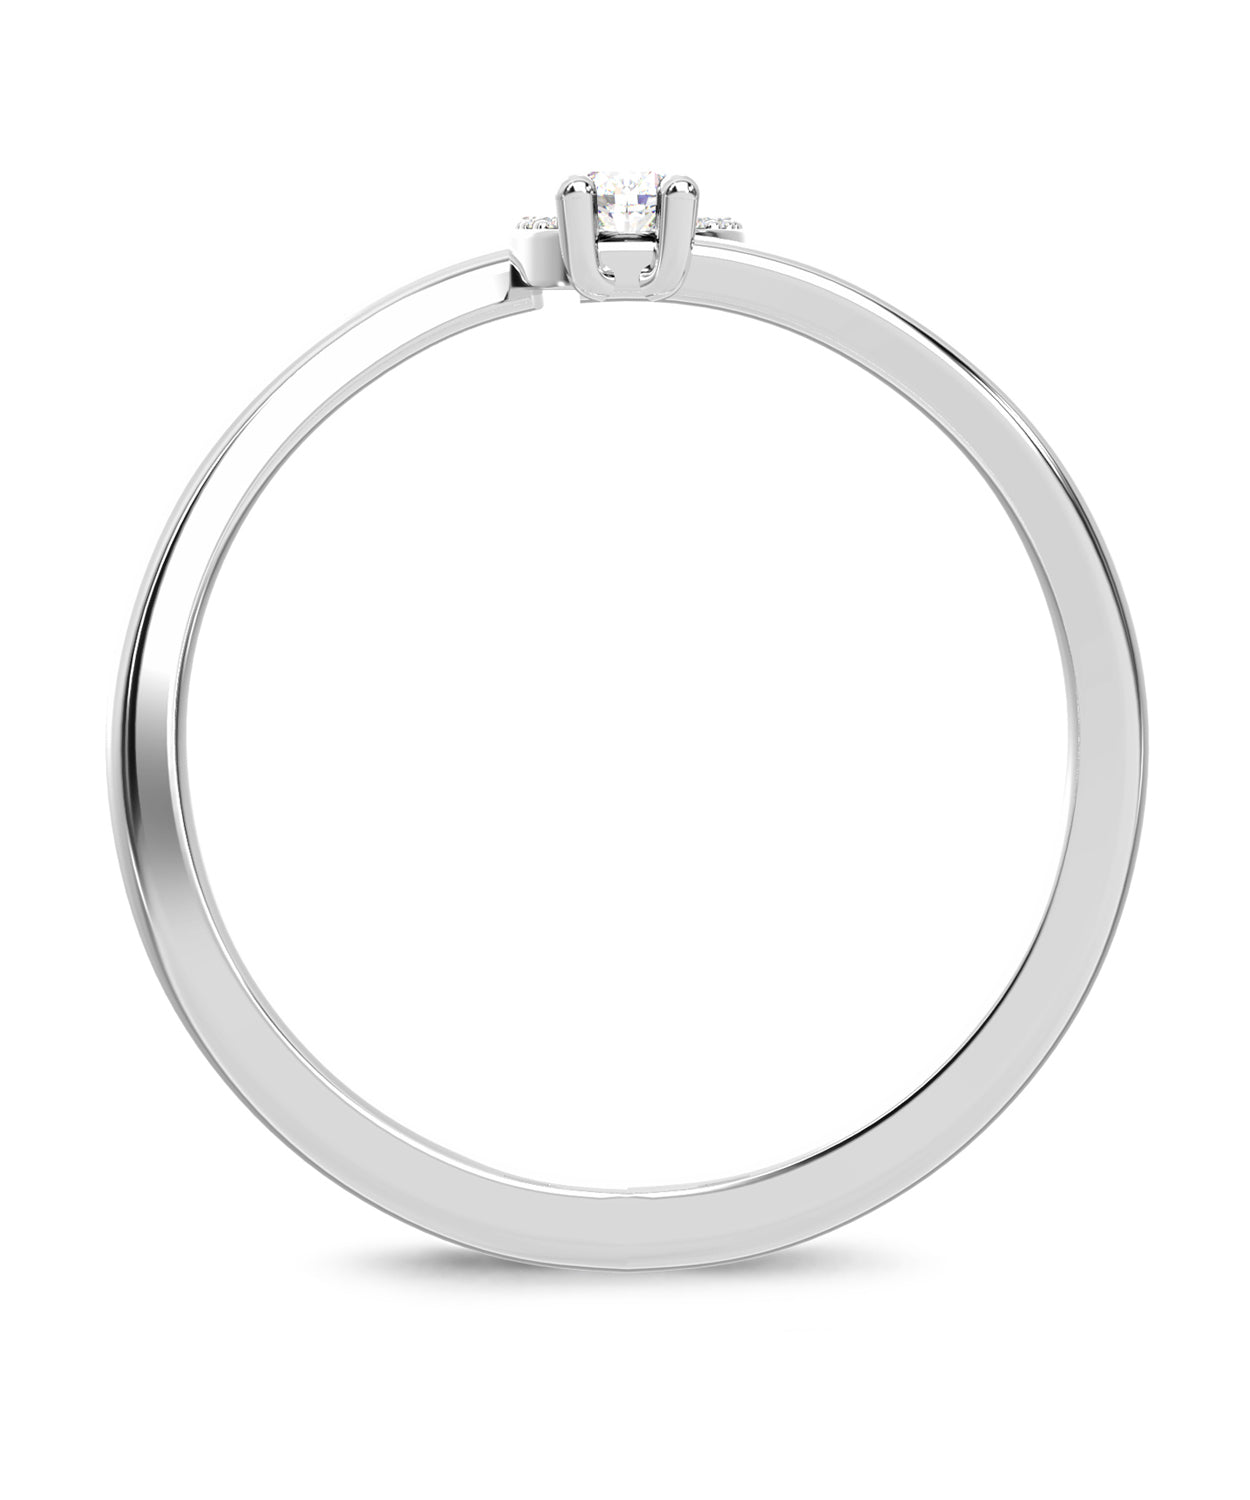 ESEMCO Diamond 18k White Gold Letter U Initial Open Ring View 2